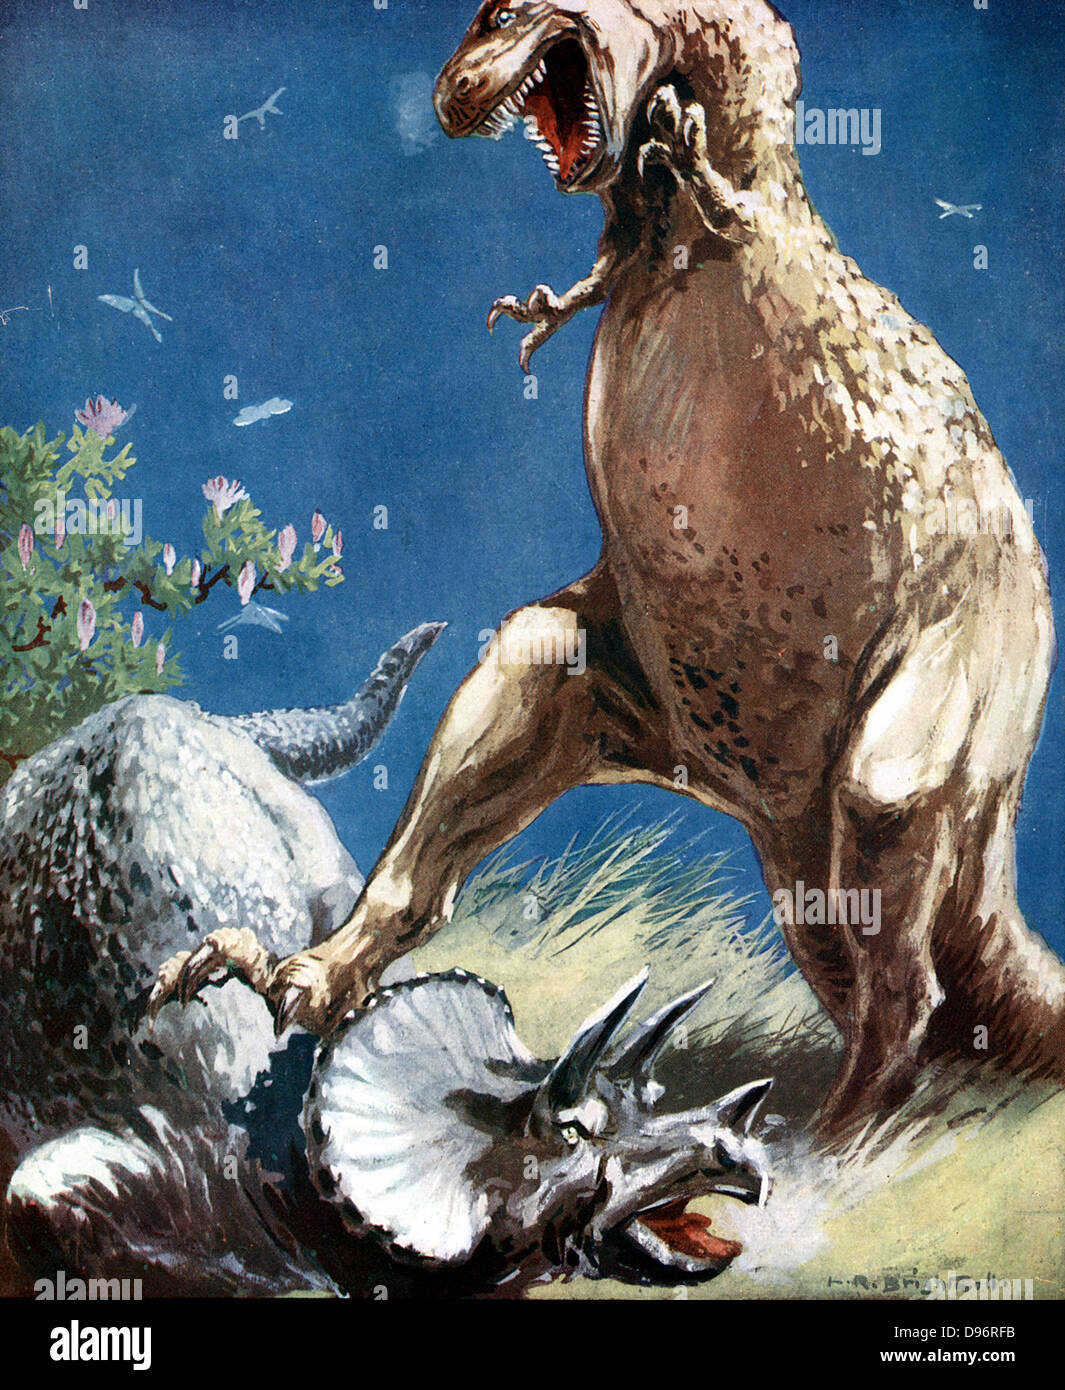 Tricerotops, un dinosauro cornuto, tenuto fermo dal Tyrannosaur. Artista della ricostruzione della lotta tra i due giganti di rettili del mesozoico (225,000,000 -65,000,000 anni fa) pubblicato c1920 Foto Stock